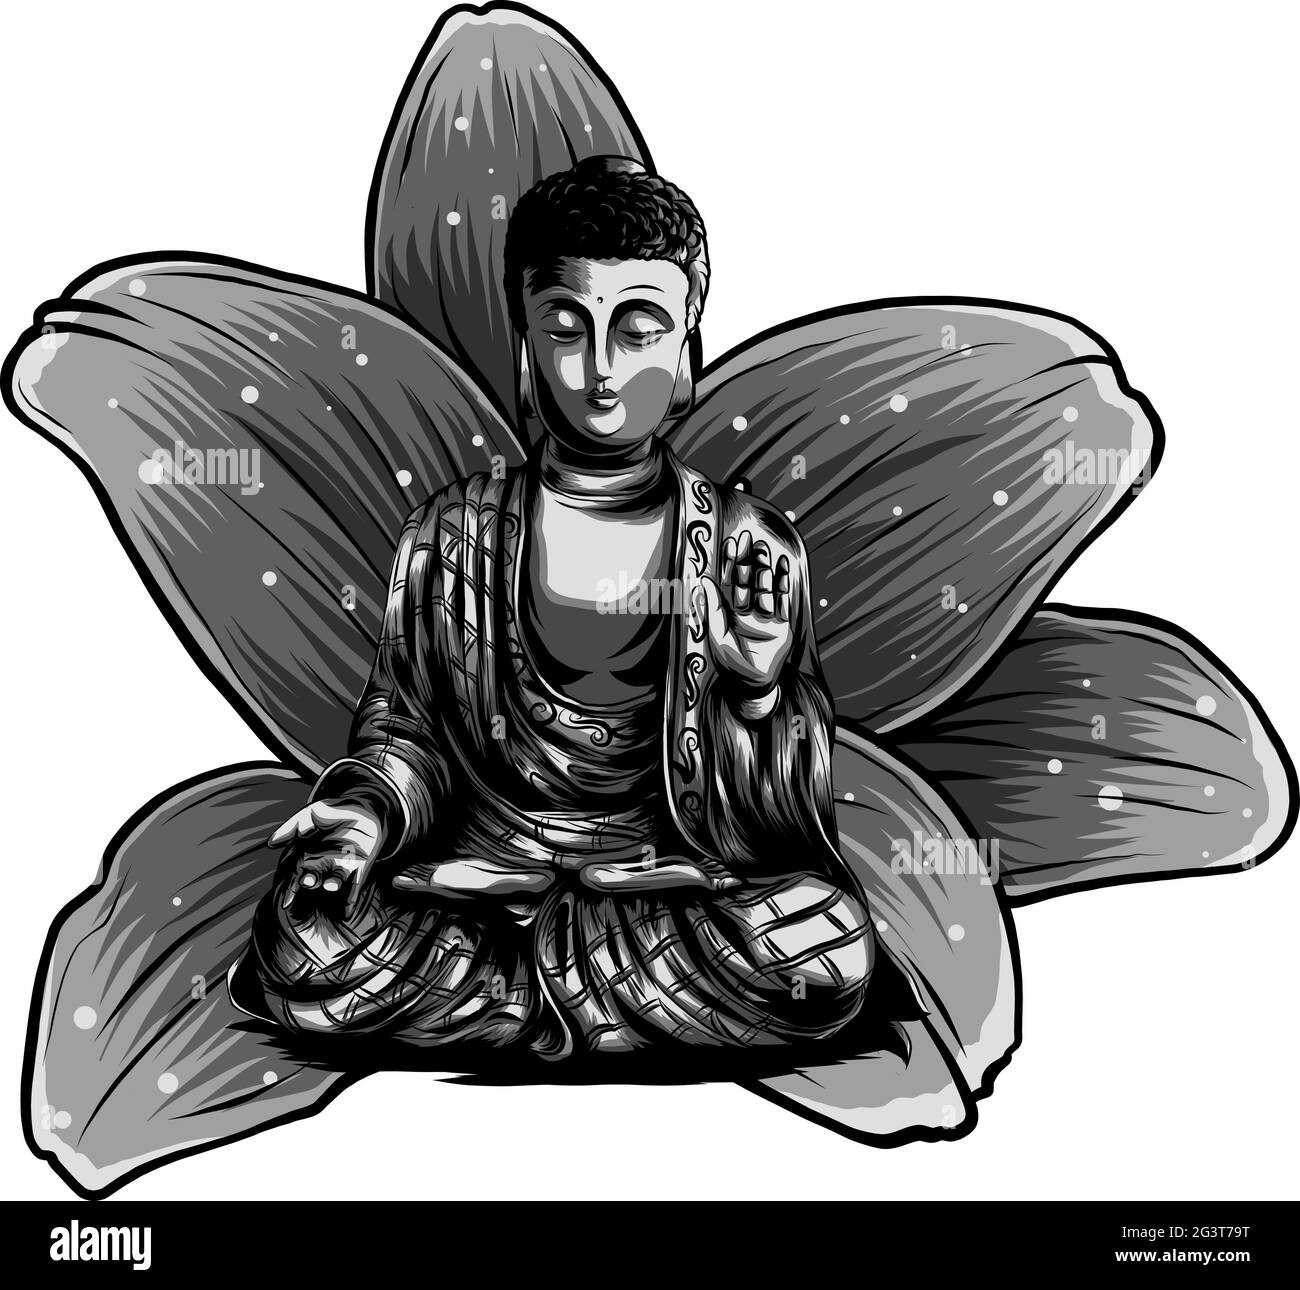 Buddha sitzt auf einem Lotus Hintergrund Vektor illustrartion Stock Vektor